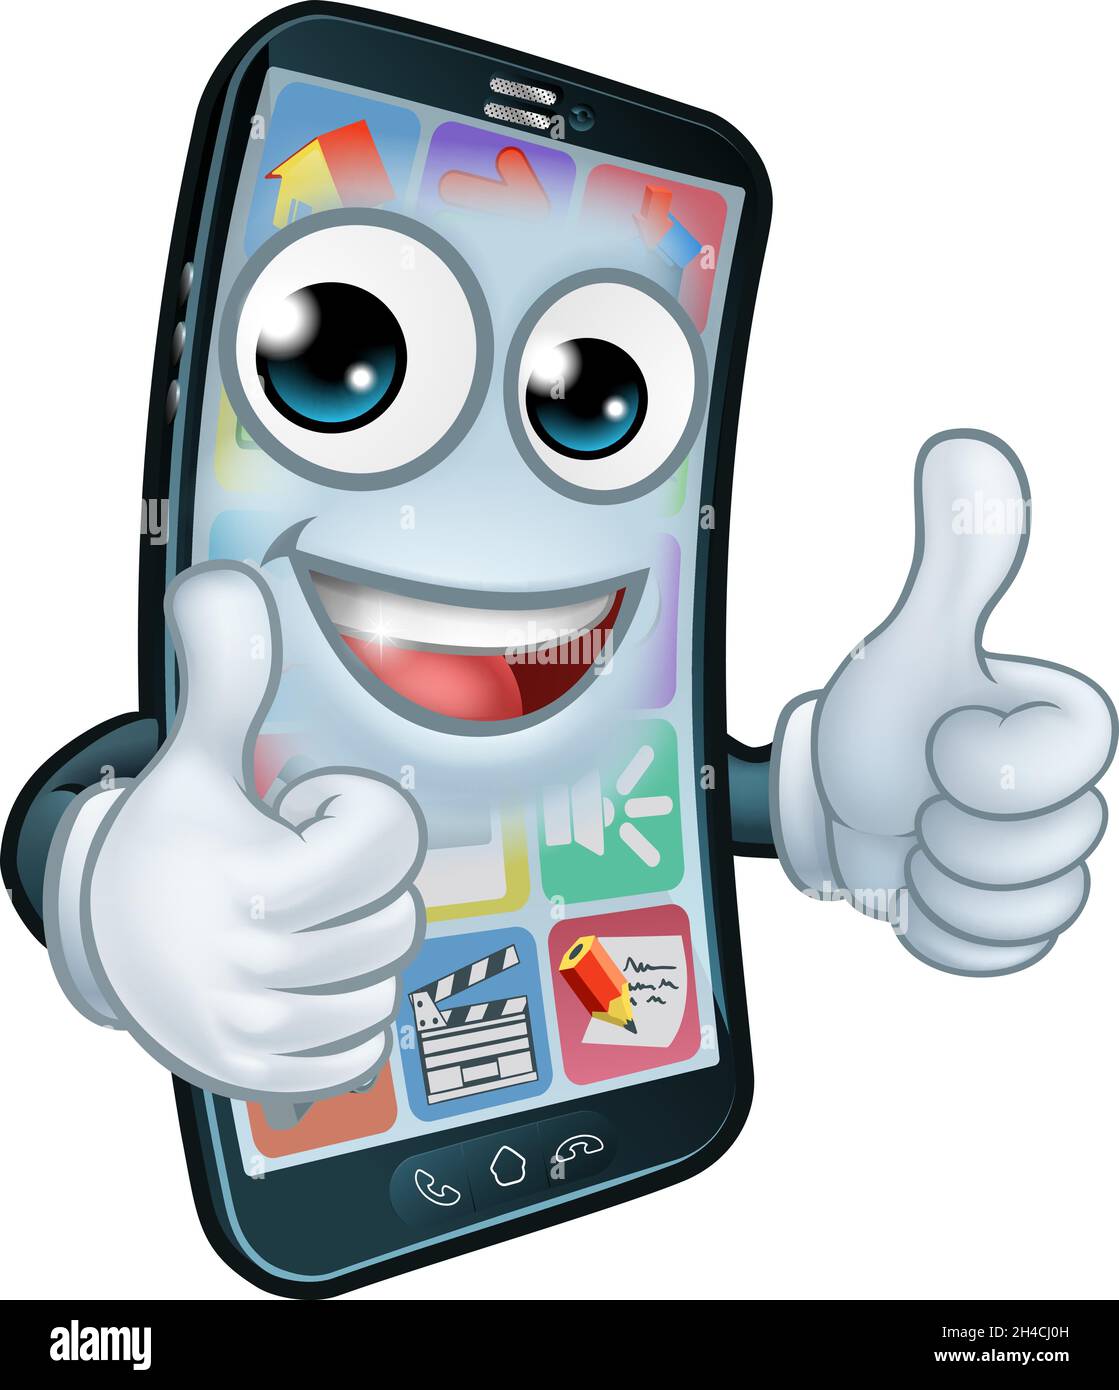 Téléphone mobile Thumbs Up Cartoon Mascot Illustration de Vecteur